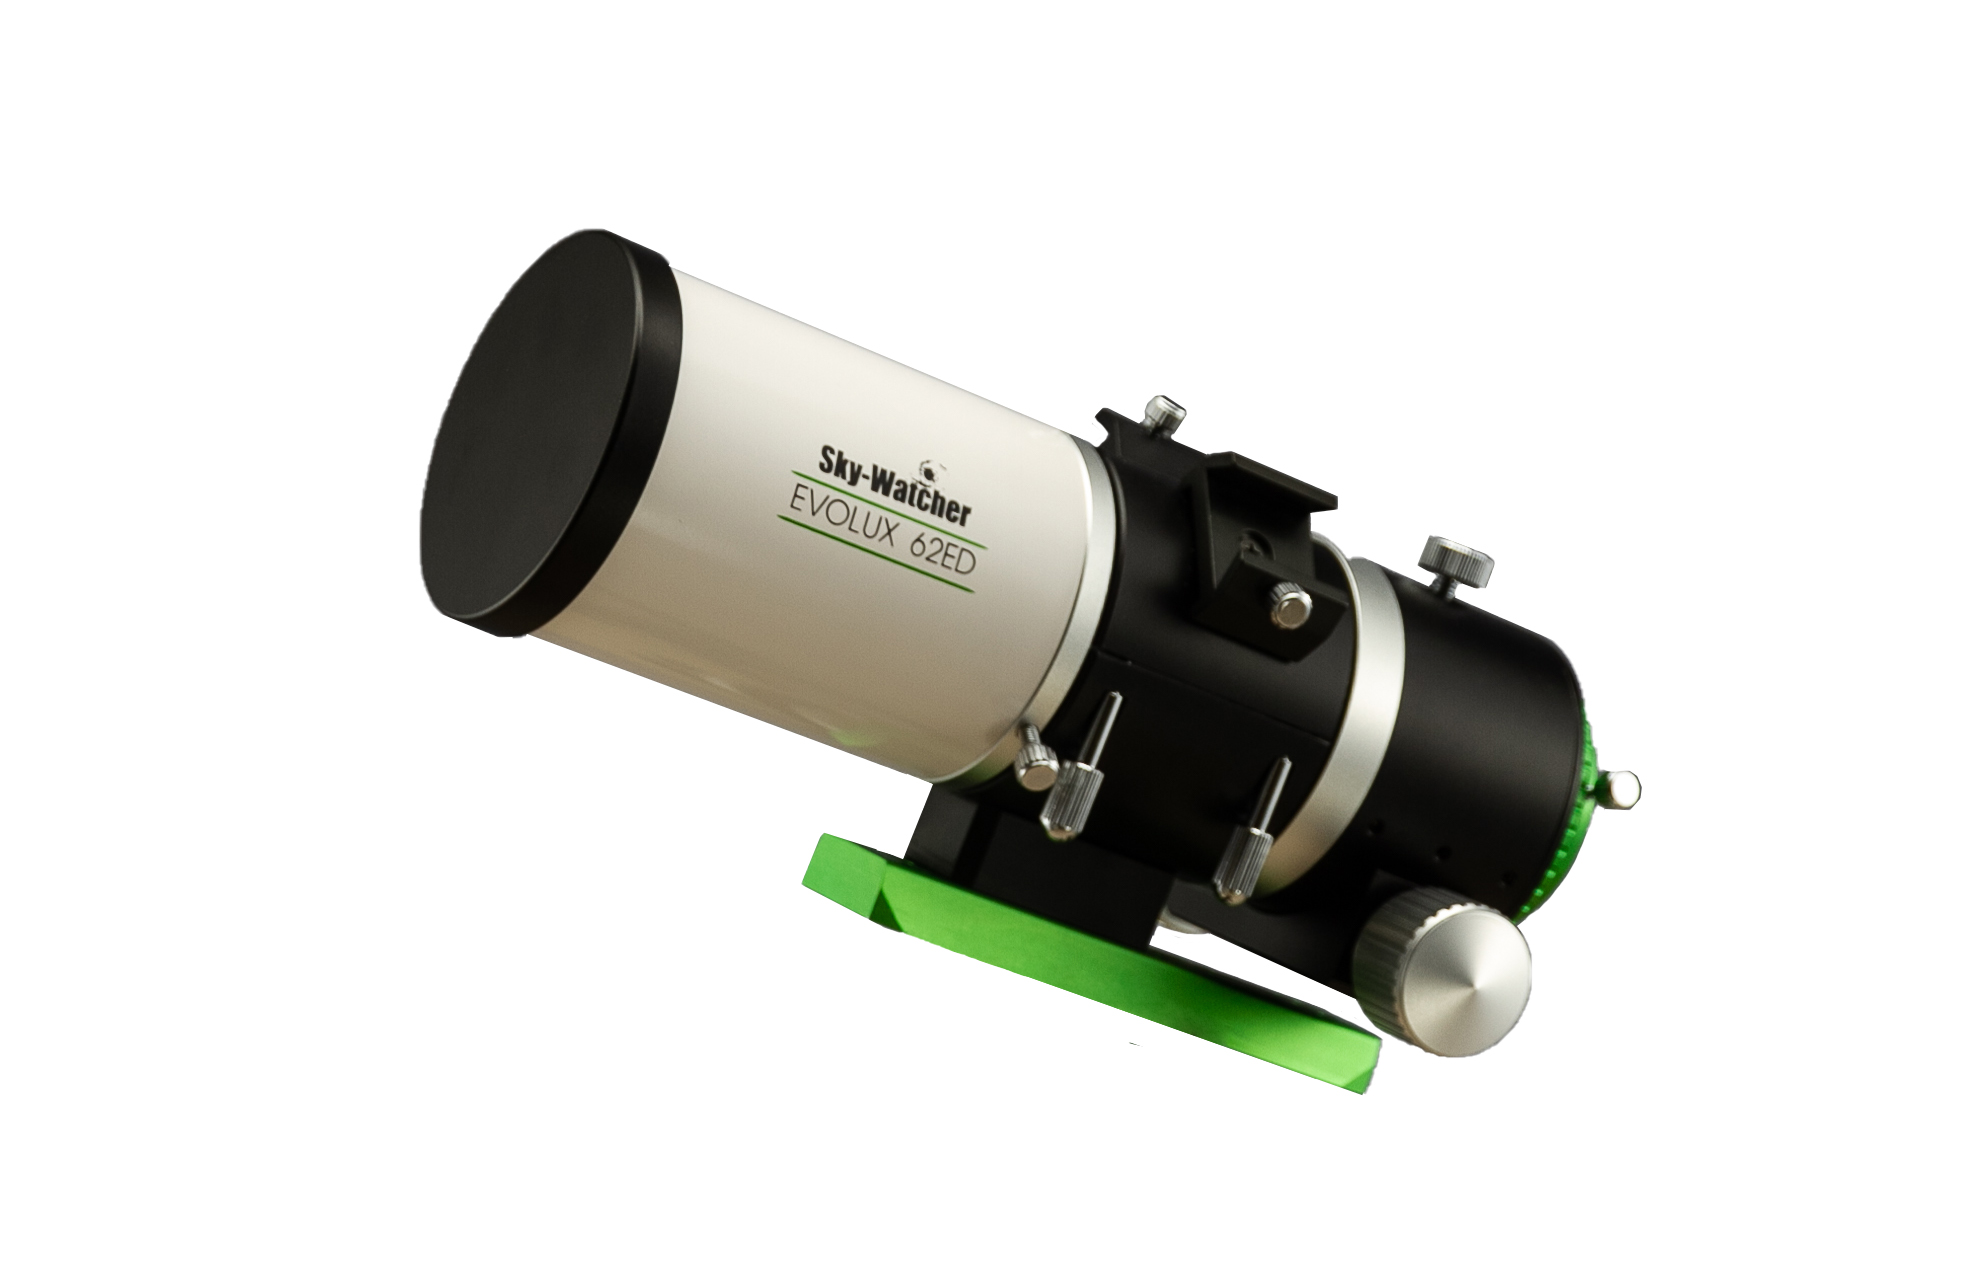  Tubo ottico Sky-Watcher Evolux 62 ED completo di riduttore di focale 